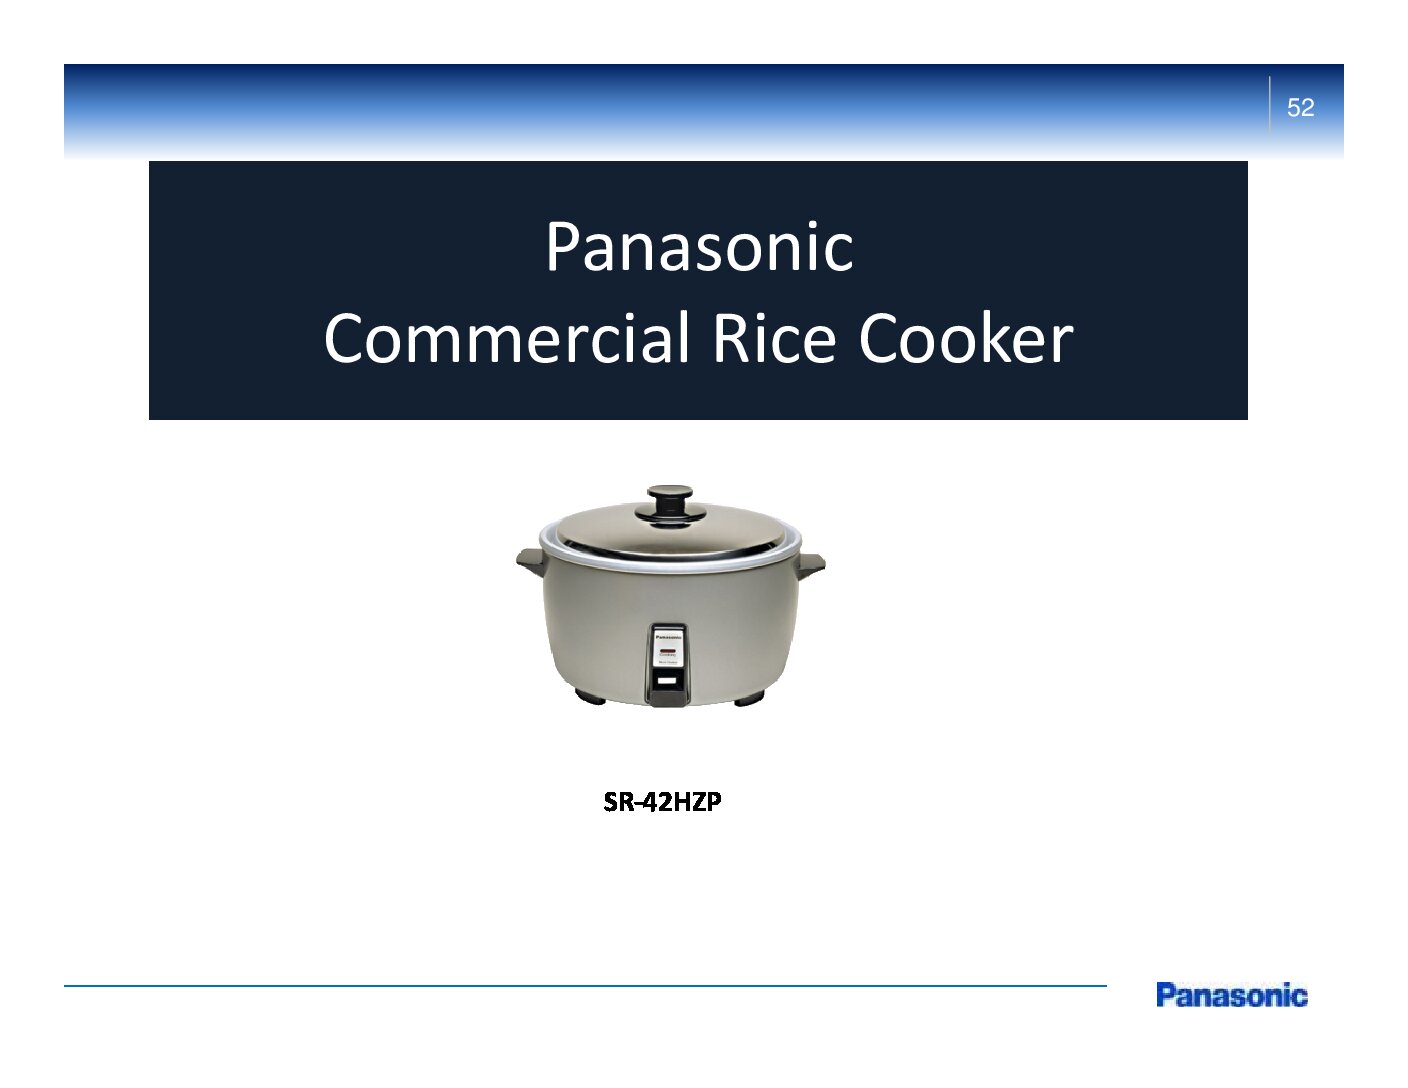 Panasonic Commercial Rice Cooker – SR-42HPZ